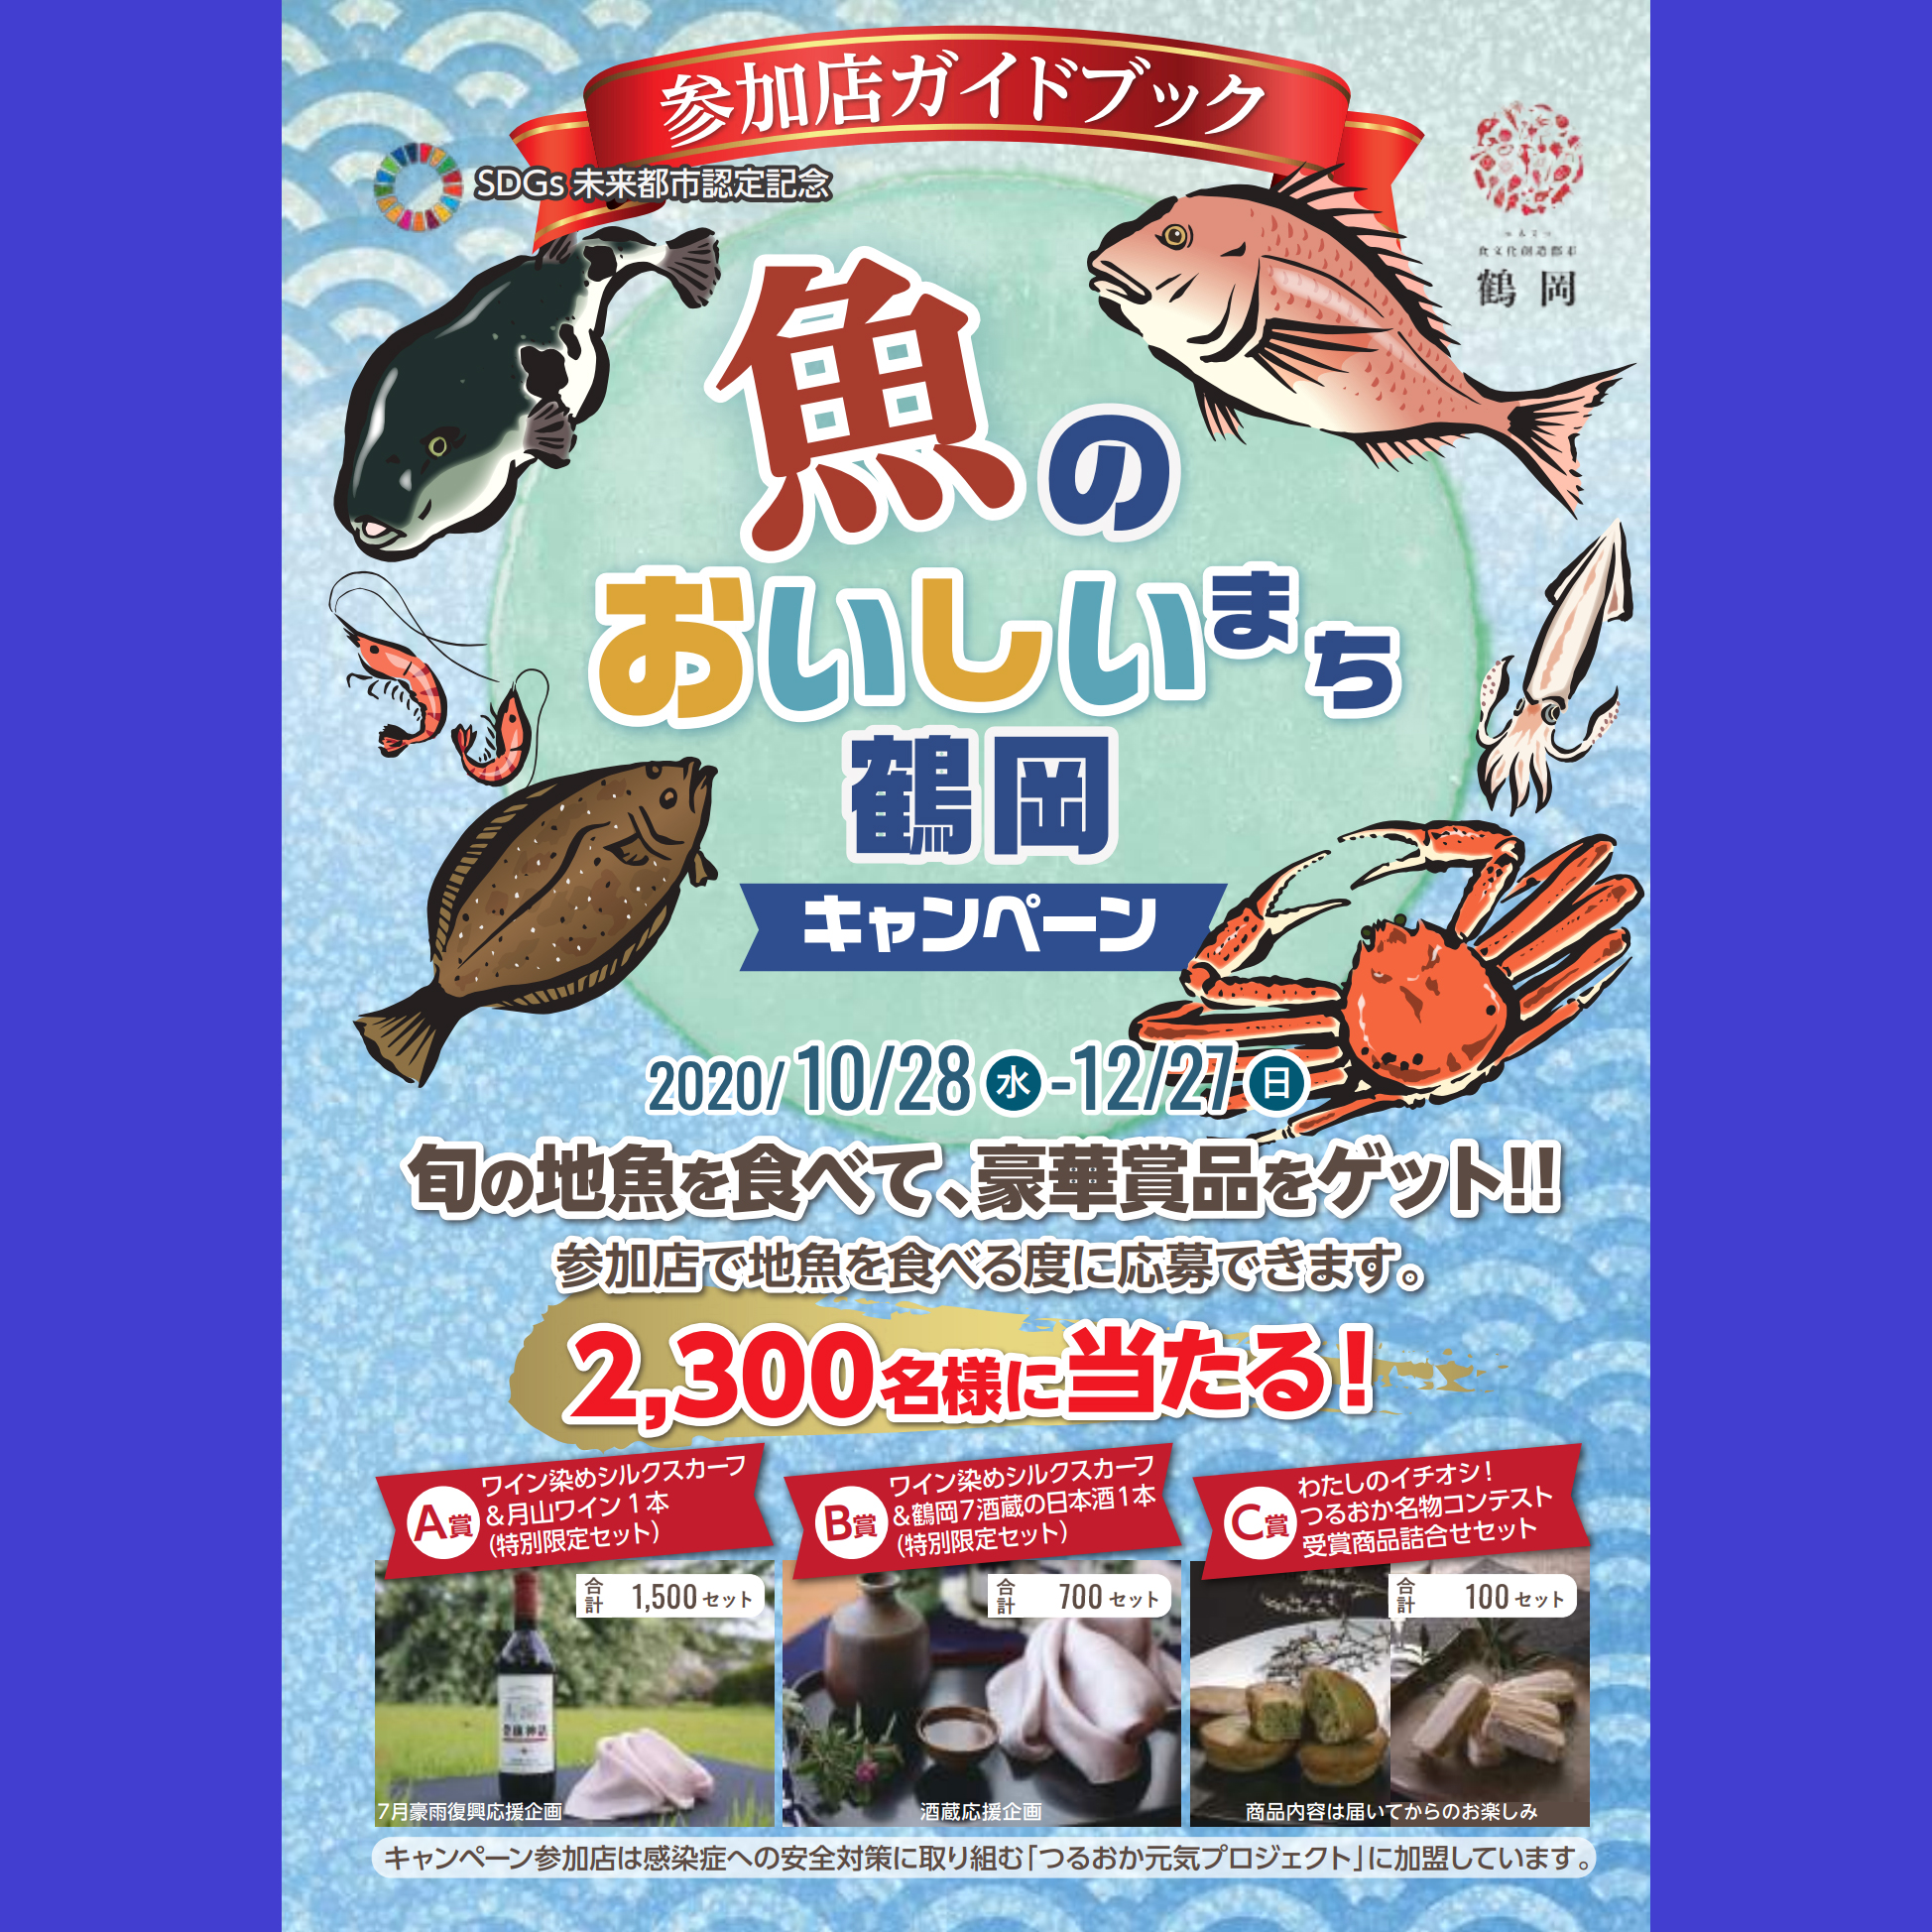 魚のおいしいまち鶴岡キャンペーン参加中です 和定食 滝太郎